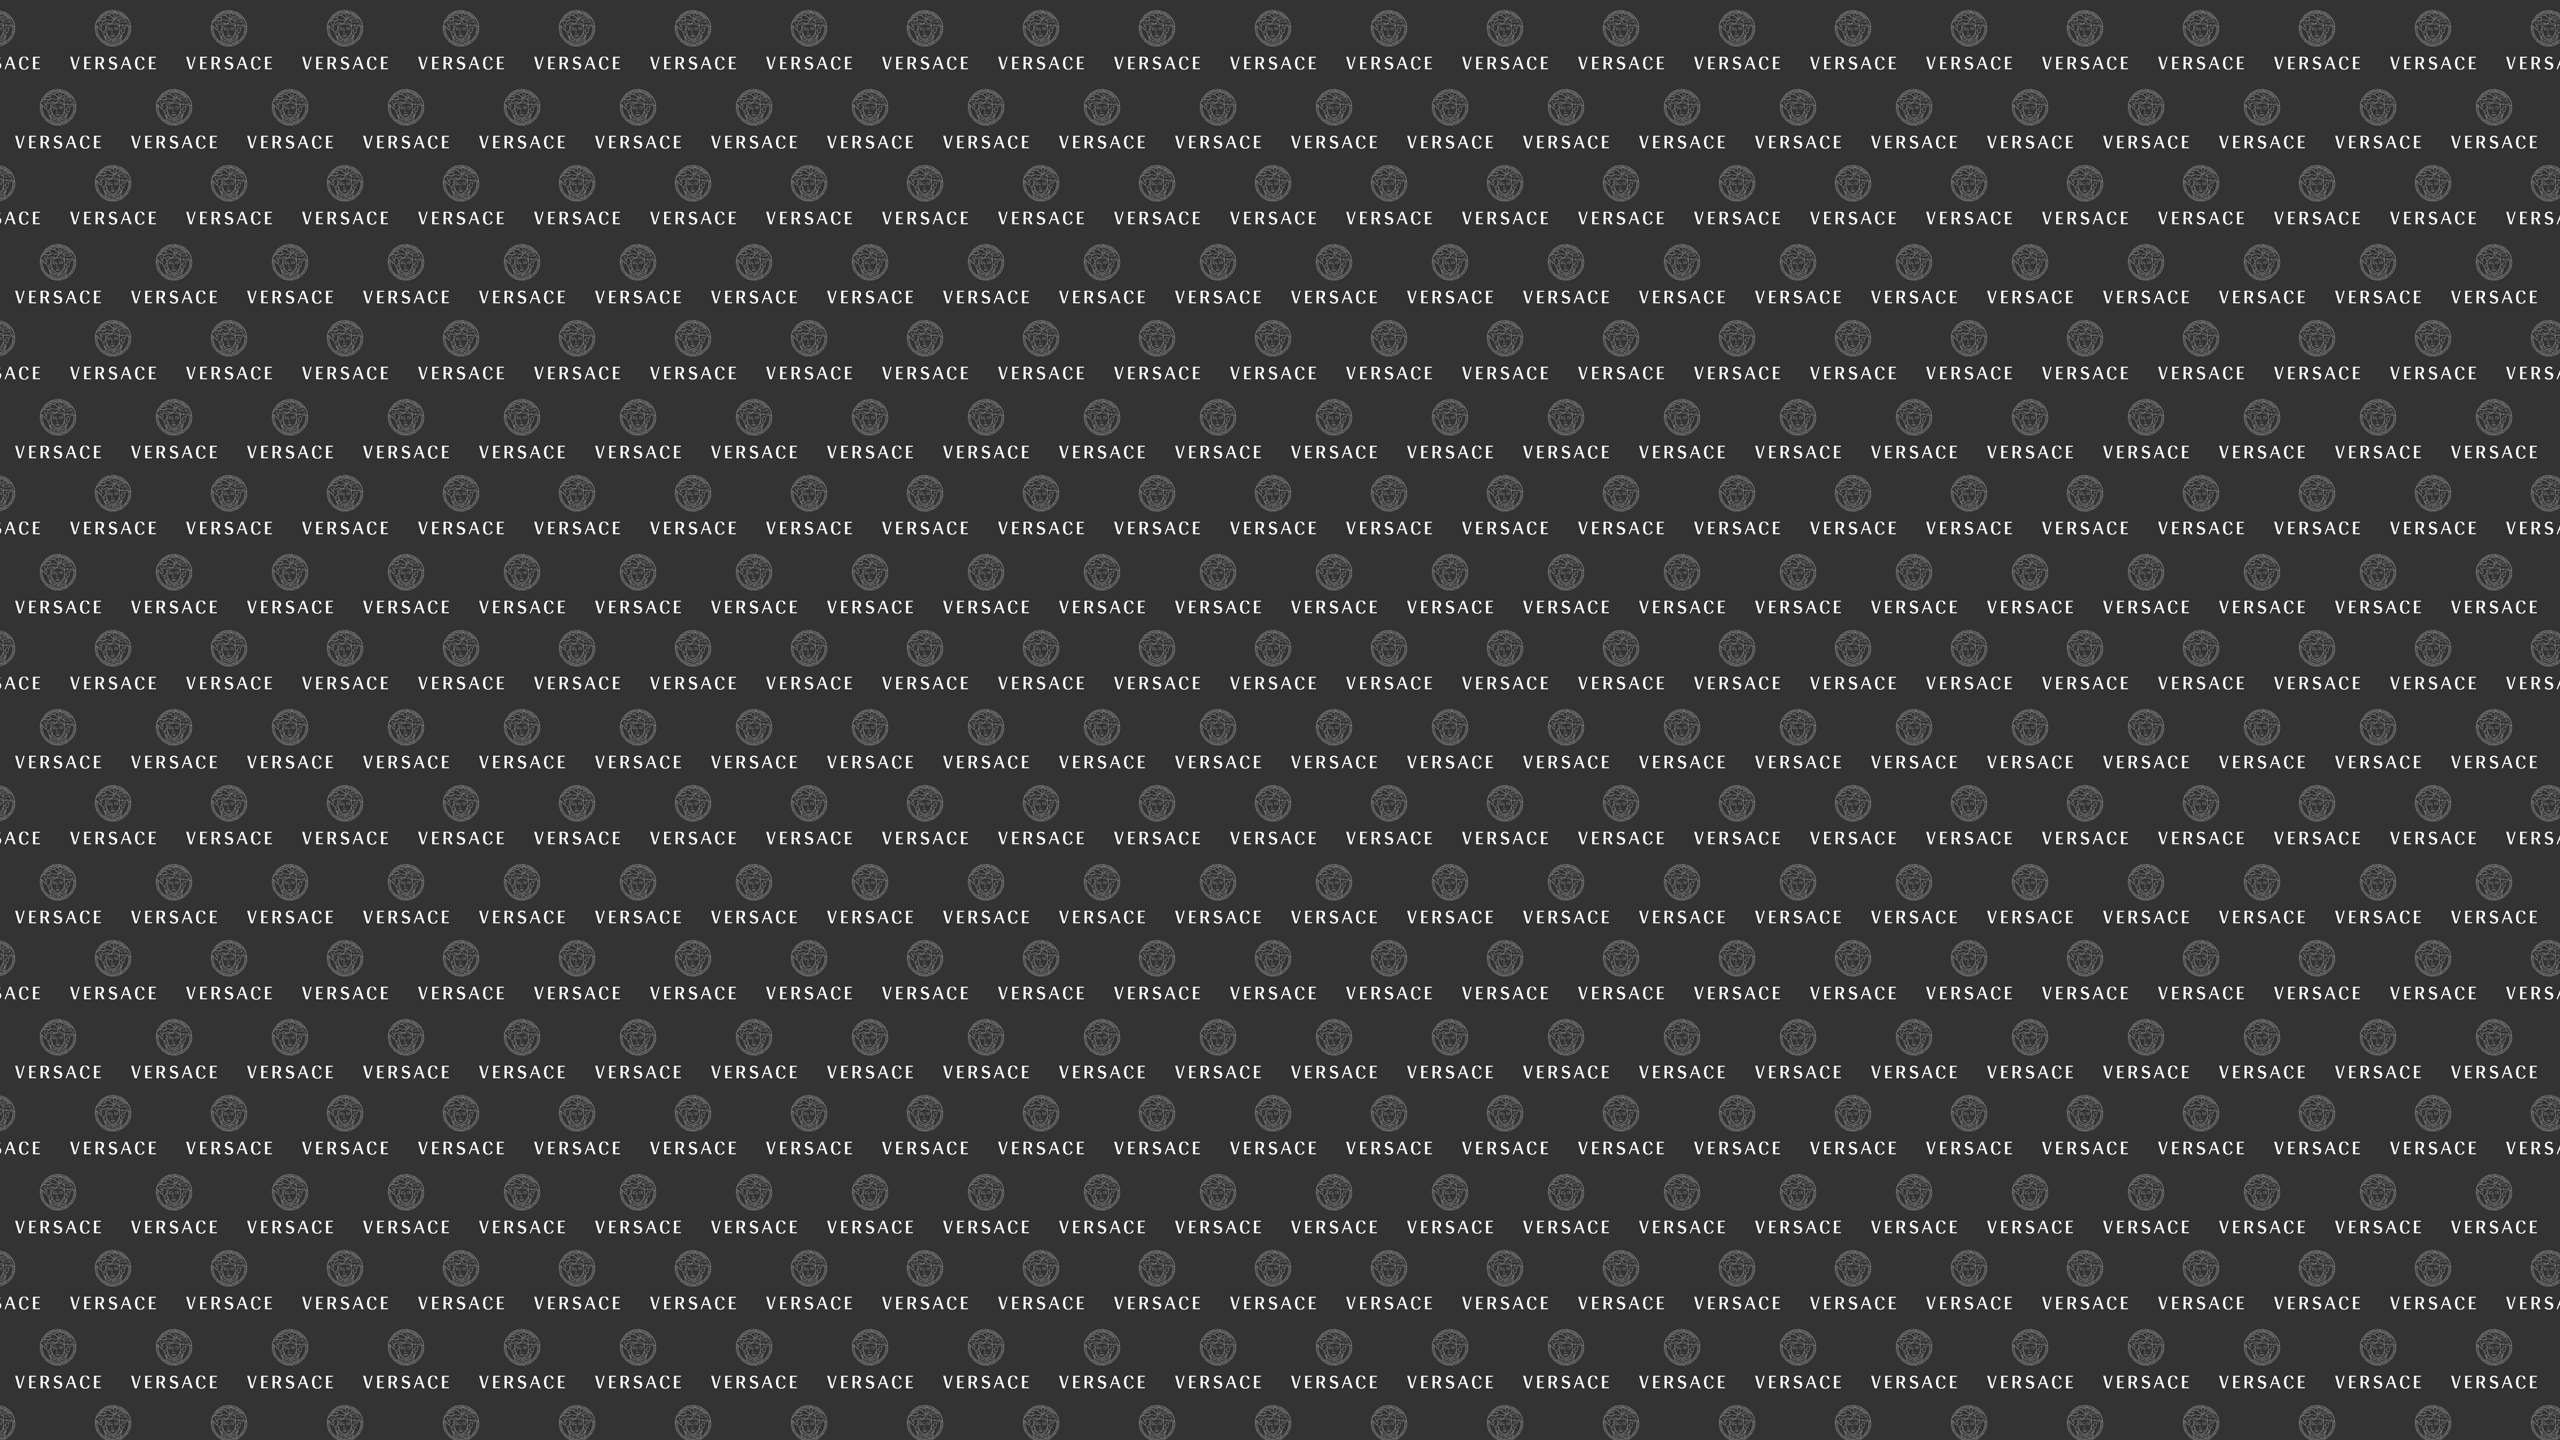 Versace Wallpapers HD | PixelsTalk.Net2560 x 1440